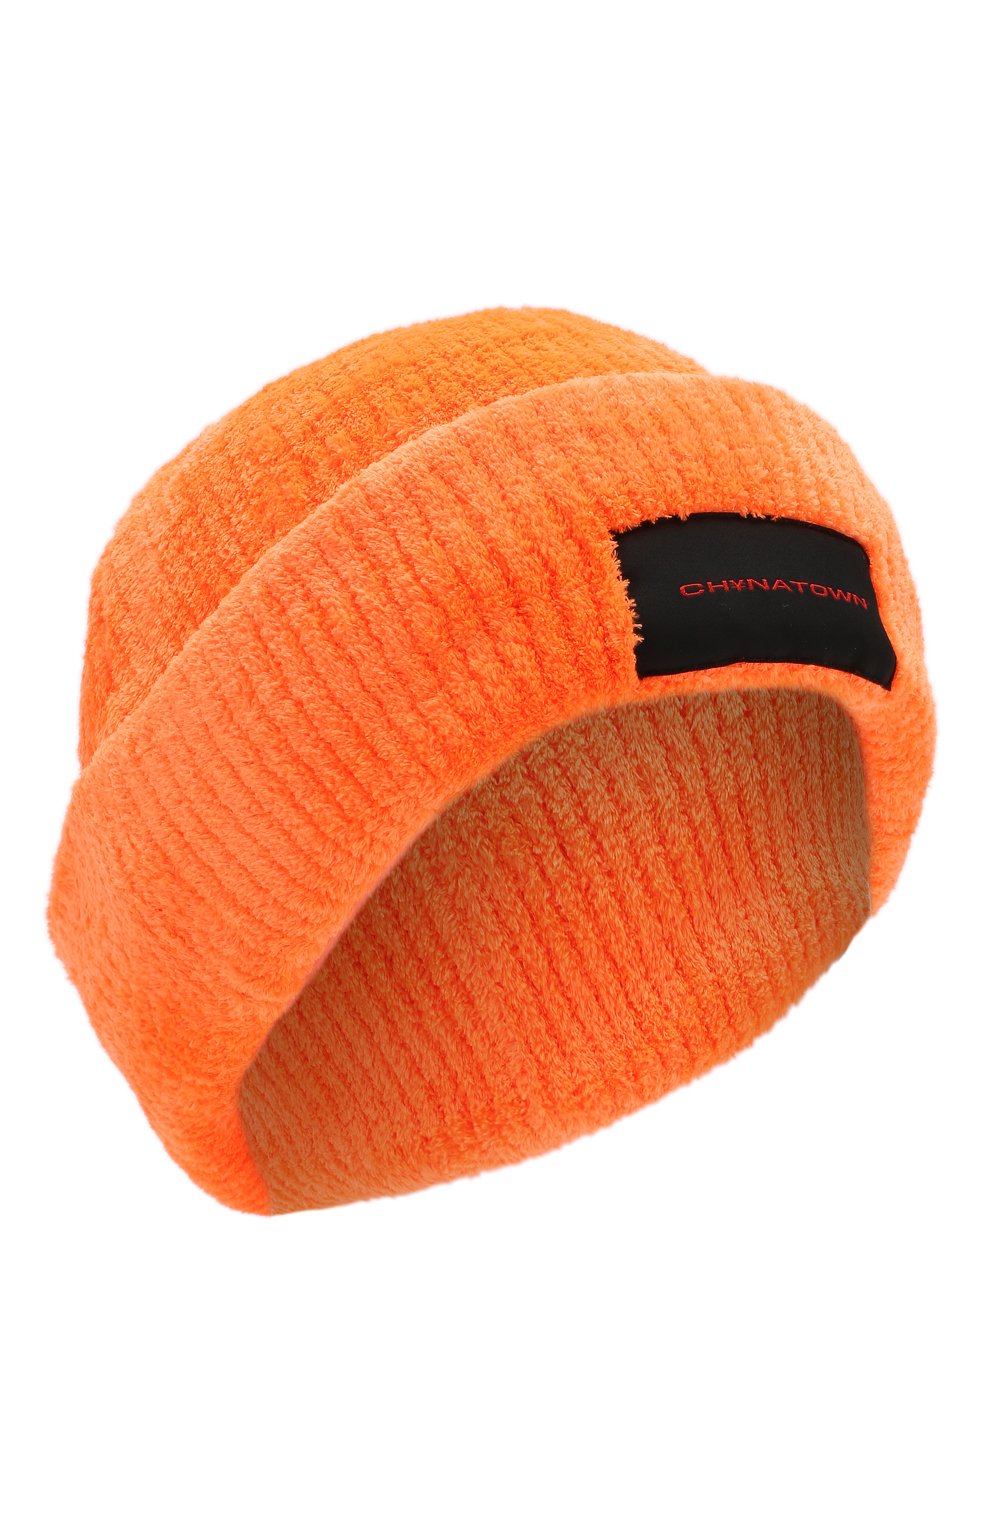 Женская шапка ALEXANDER WANG оранжевого цвета, арт. 1KC2199108 | Фото 1 (Материал: Текстиль, Синтетический материал)